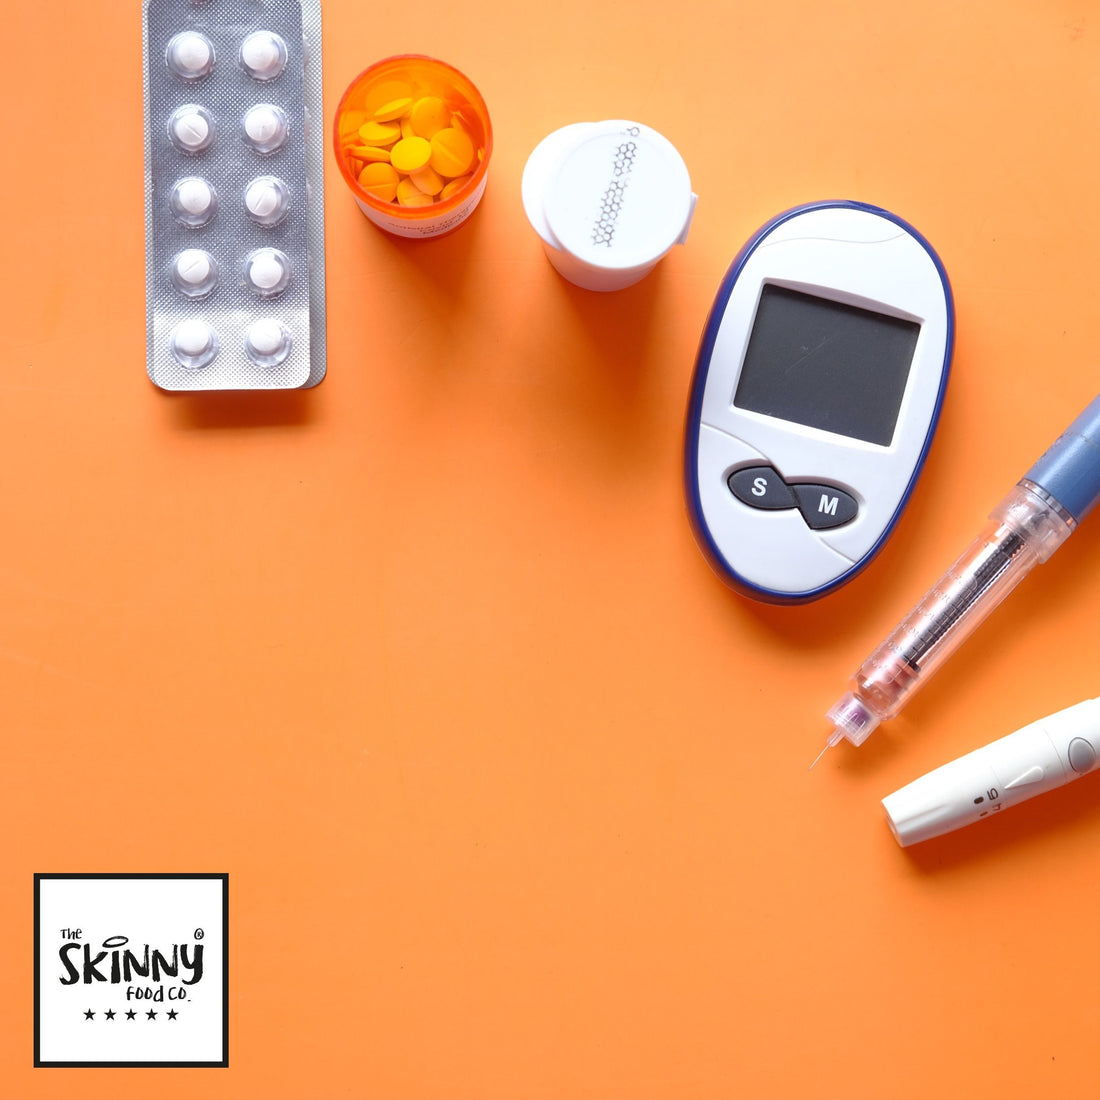 5 fő tipp cukorbetegek számára – theskinnyfoodco